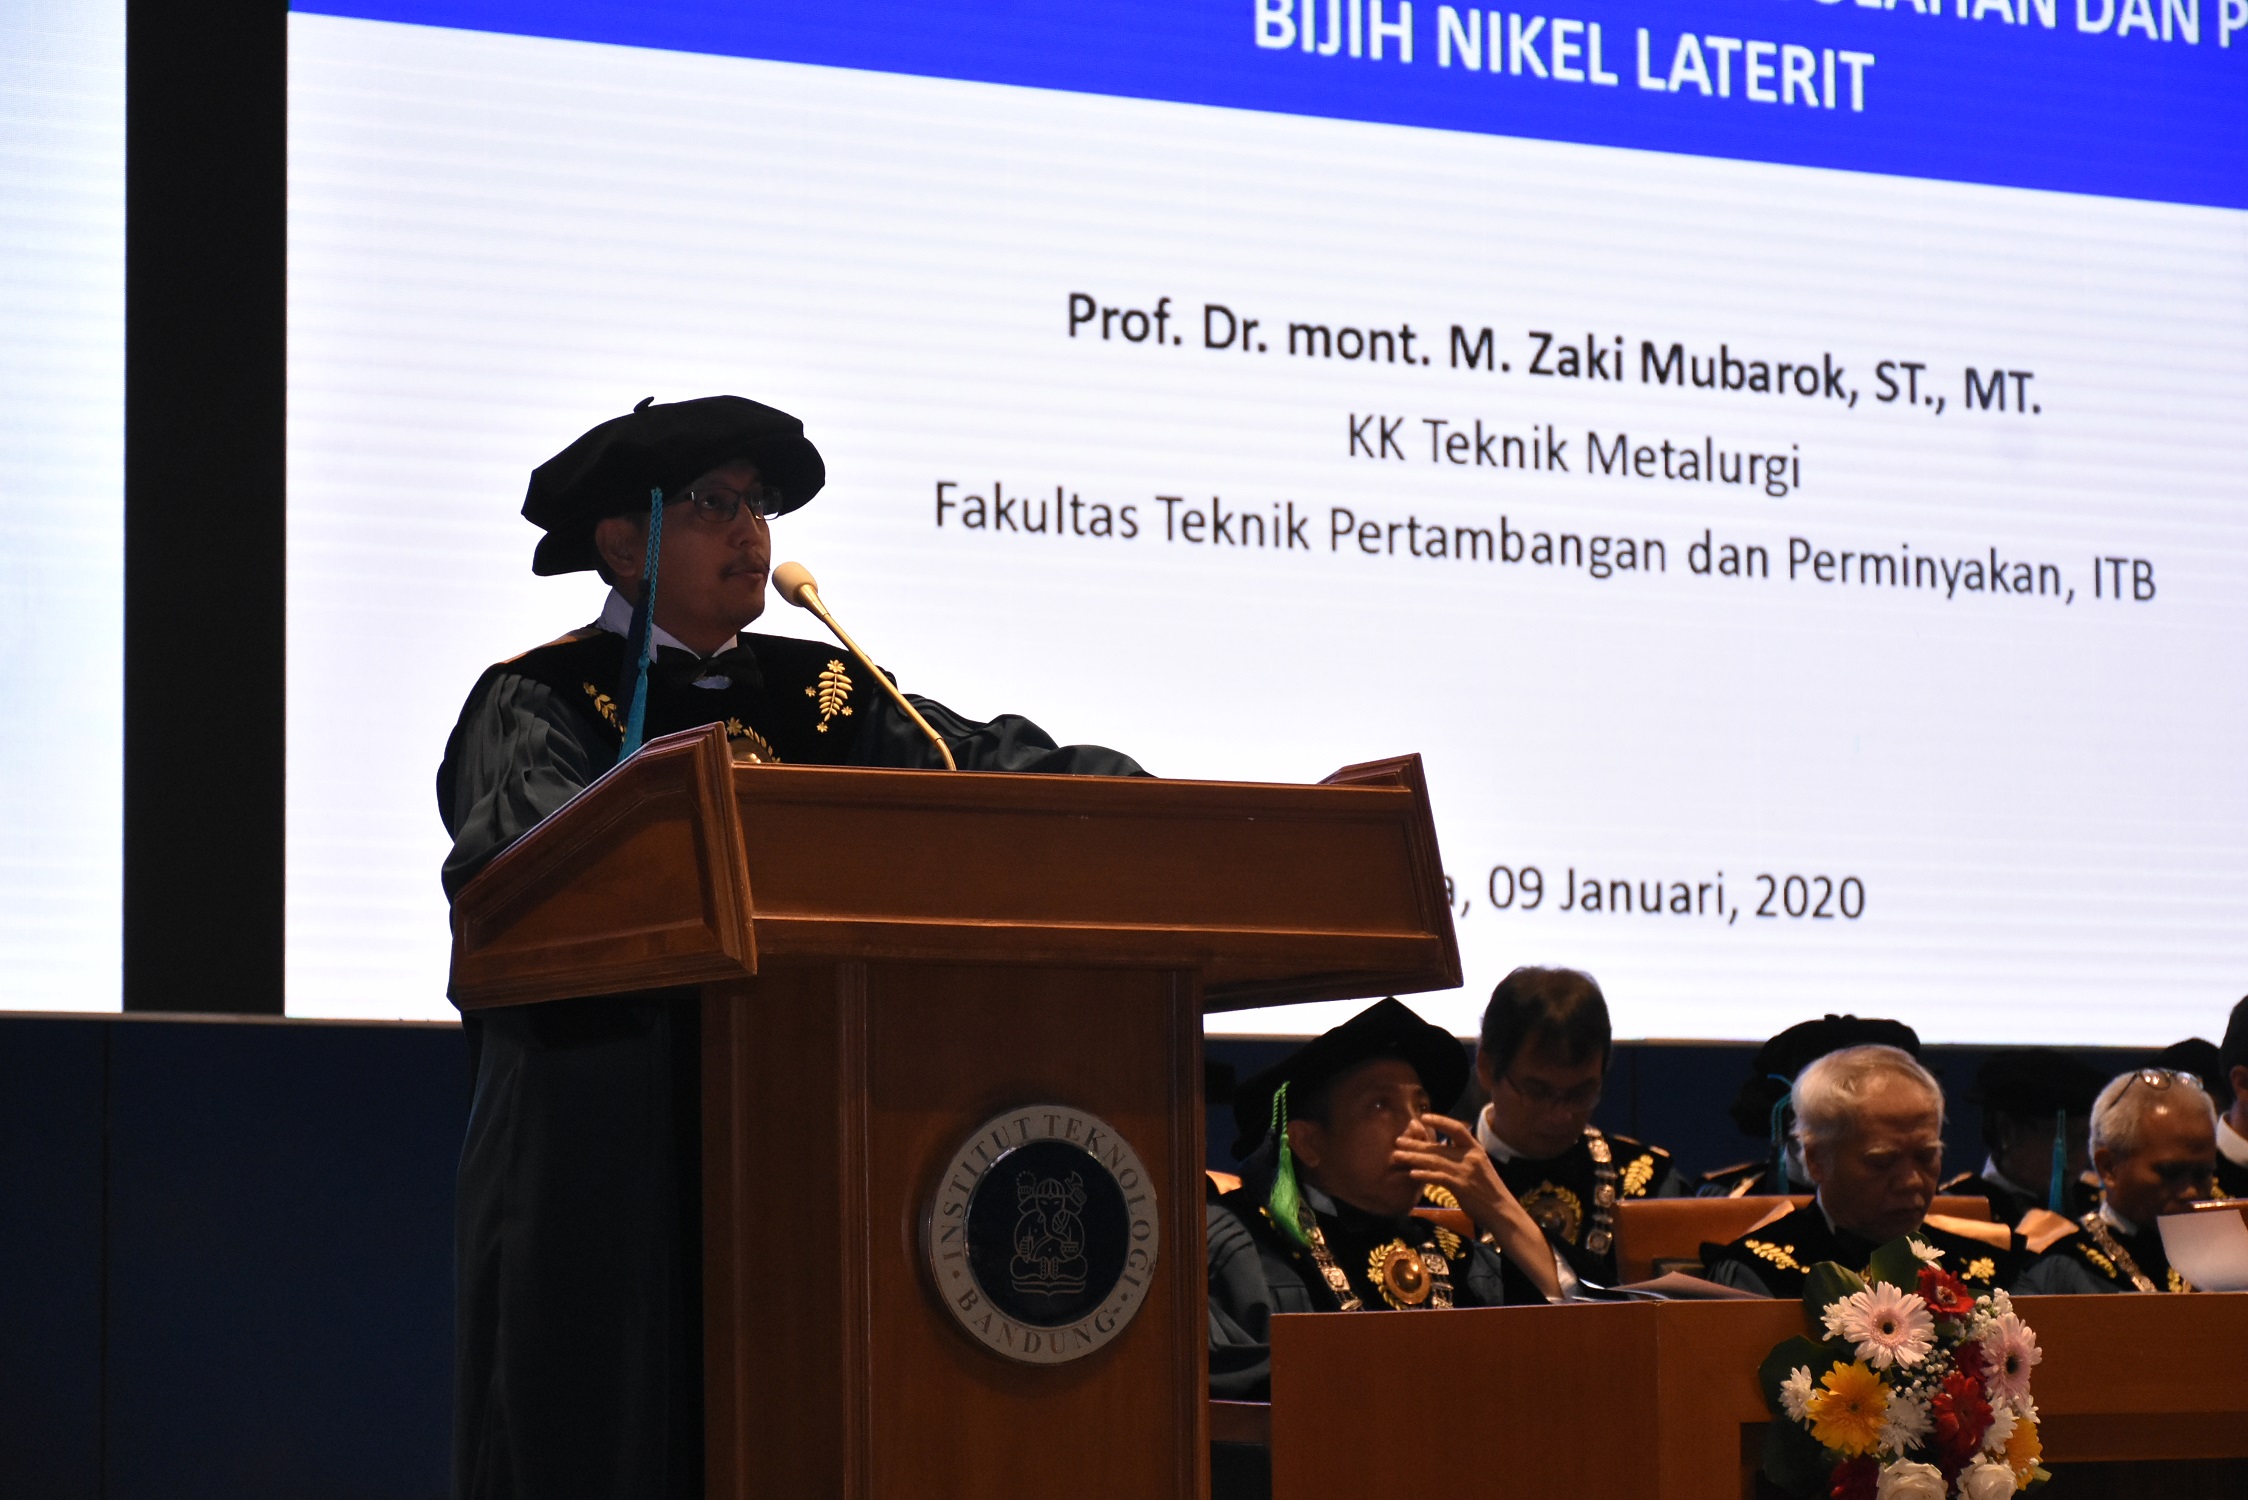 Prof. Dr.mont. M. Zaki Mubarok, S.T., M.T: Melihat Peluang Penyediaan Bahan Baku Baterai Kendaraan Listrik di Indonesia